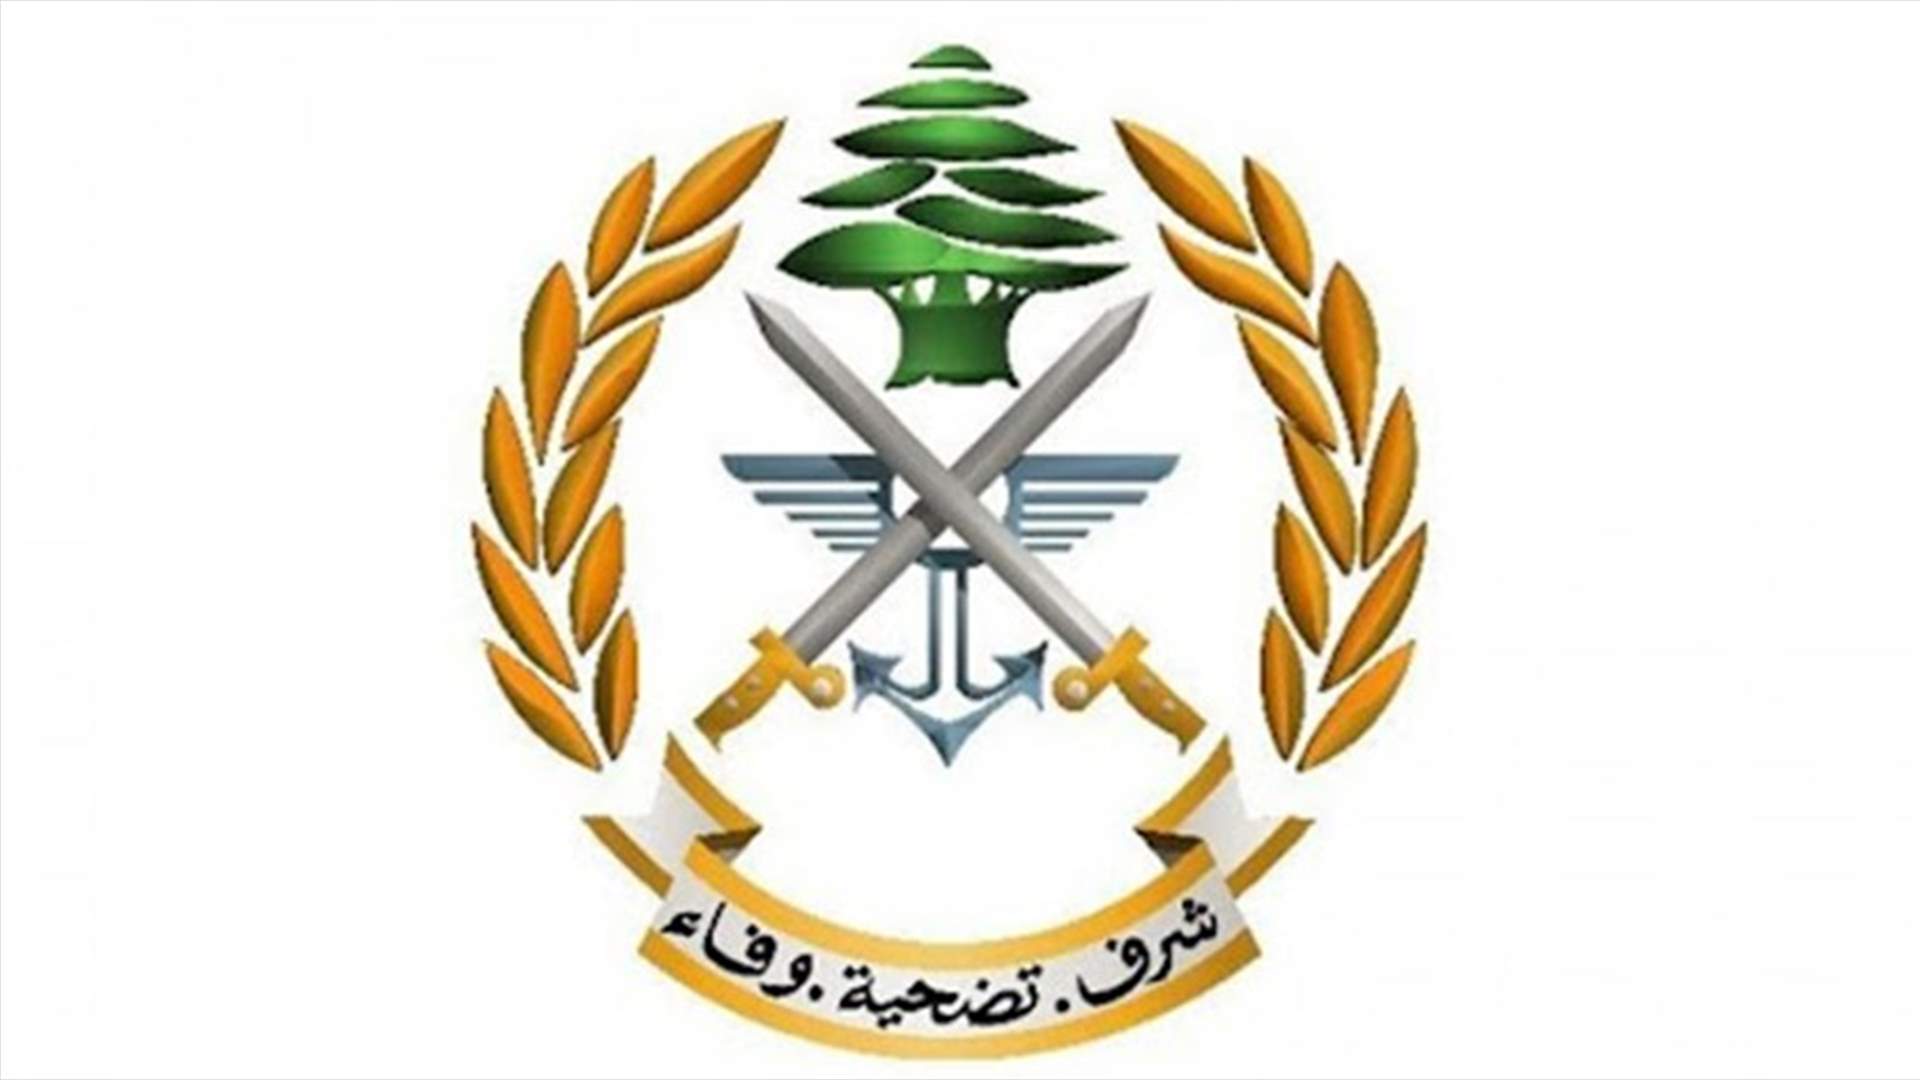 الجيش: توقيف مطلوب في منطقة حي السلم بالضاحية الجنوبية